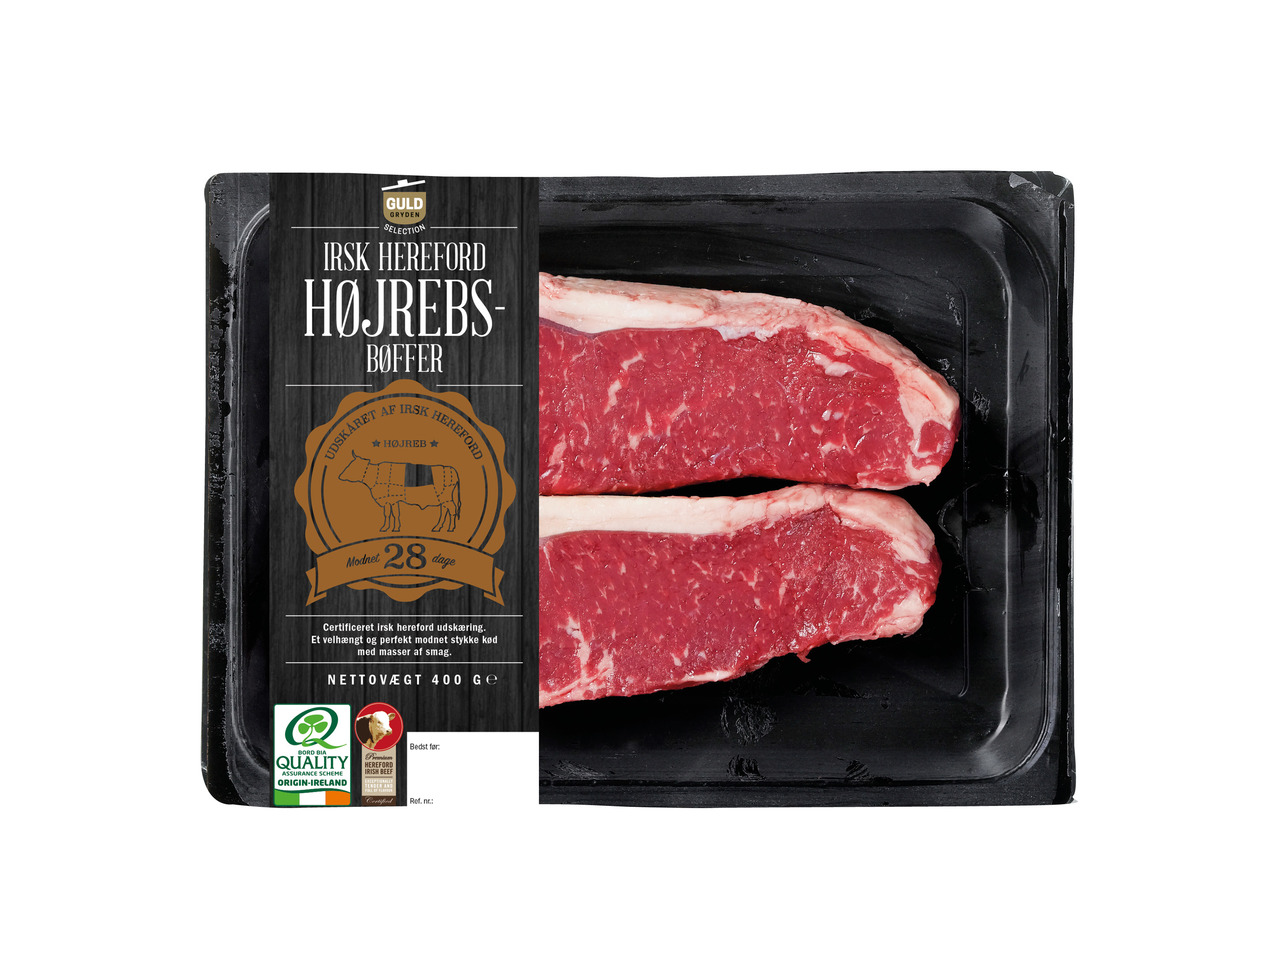 BUTCHER'S SELECTION Irsk Hereford Rib eye steaks eller højrebsbøffer